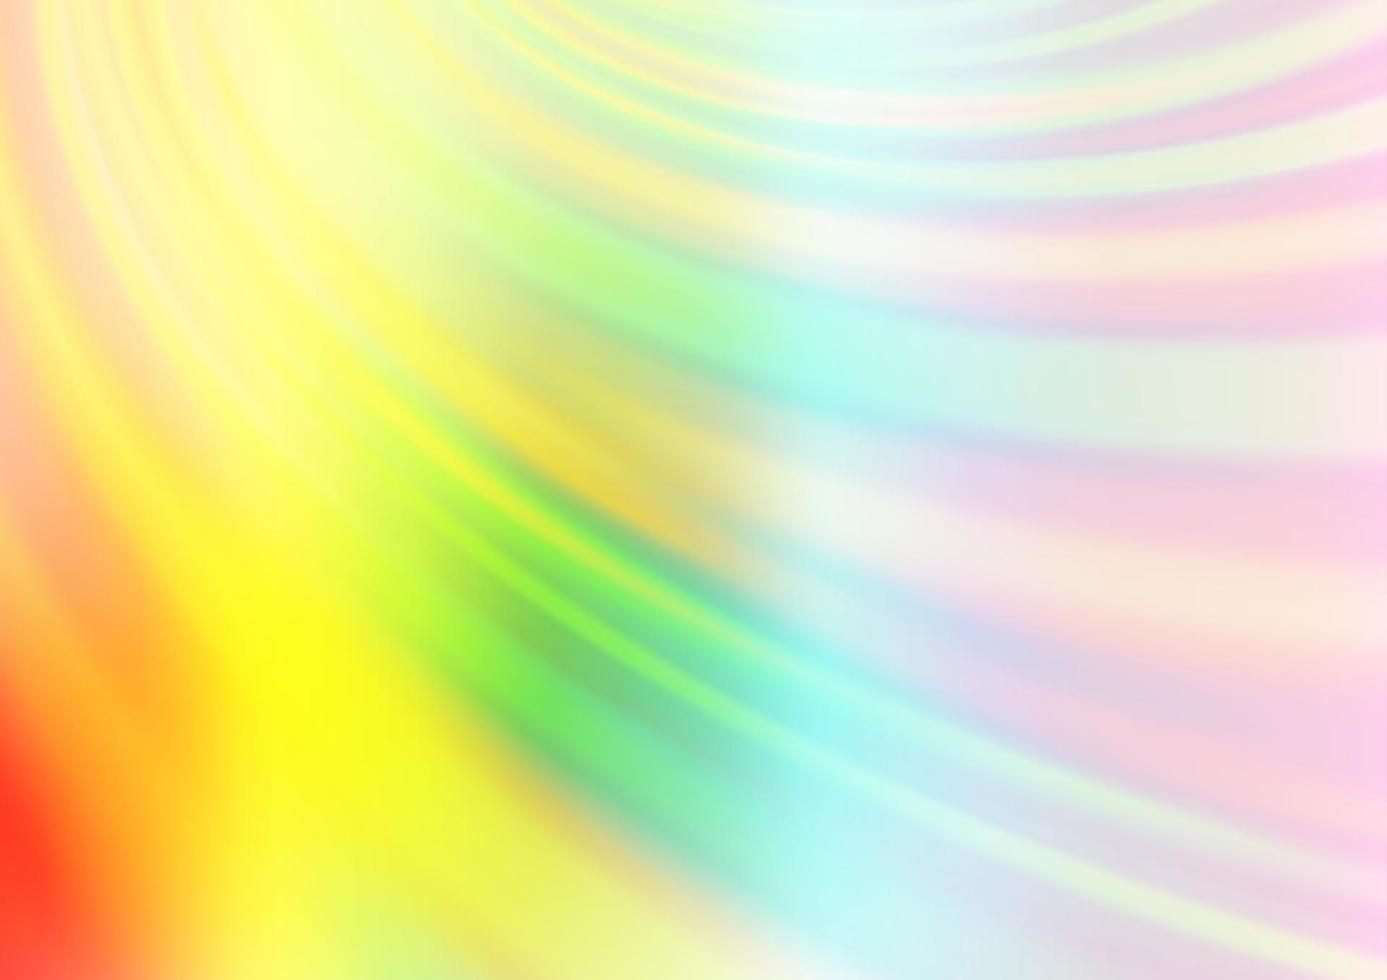 ljus multicolor, regnbåge vektor glänsande abstrakt bakgrund.